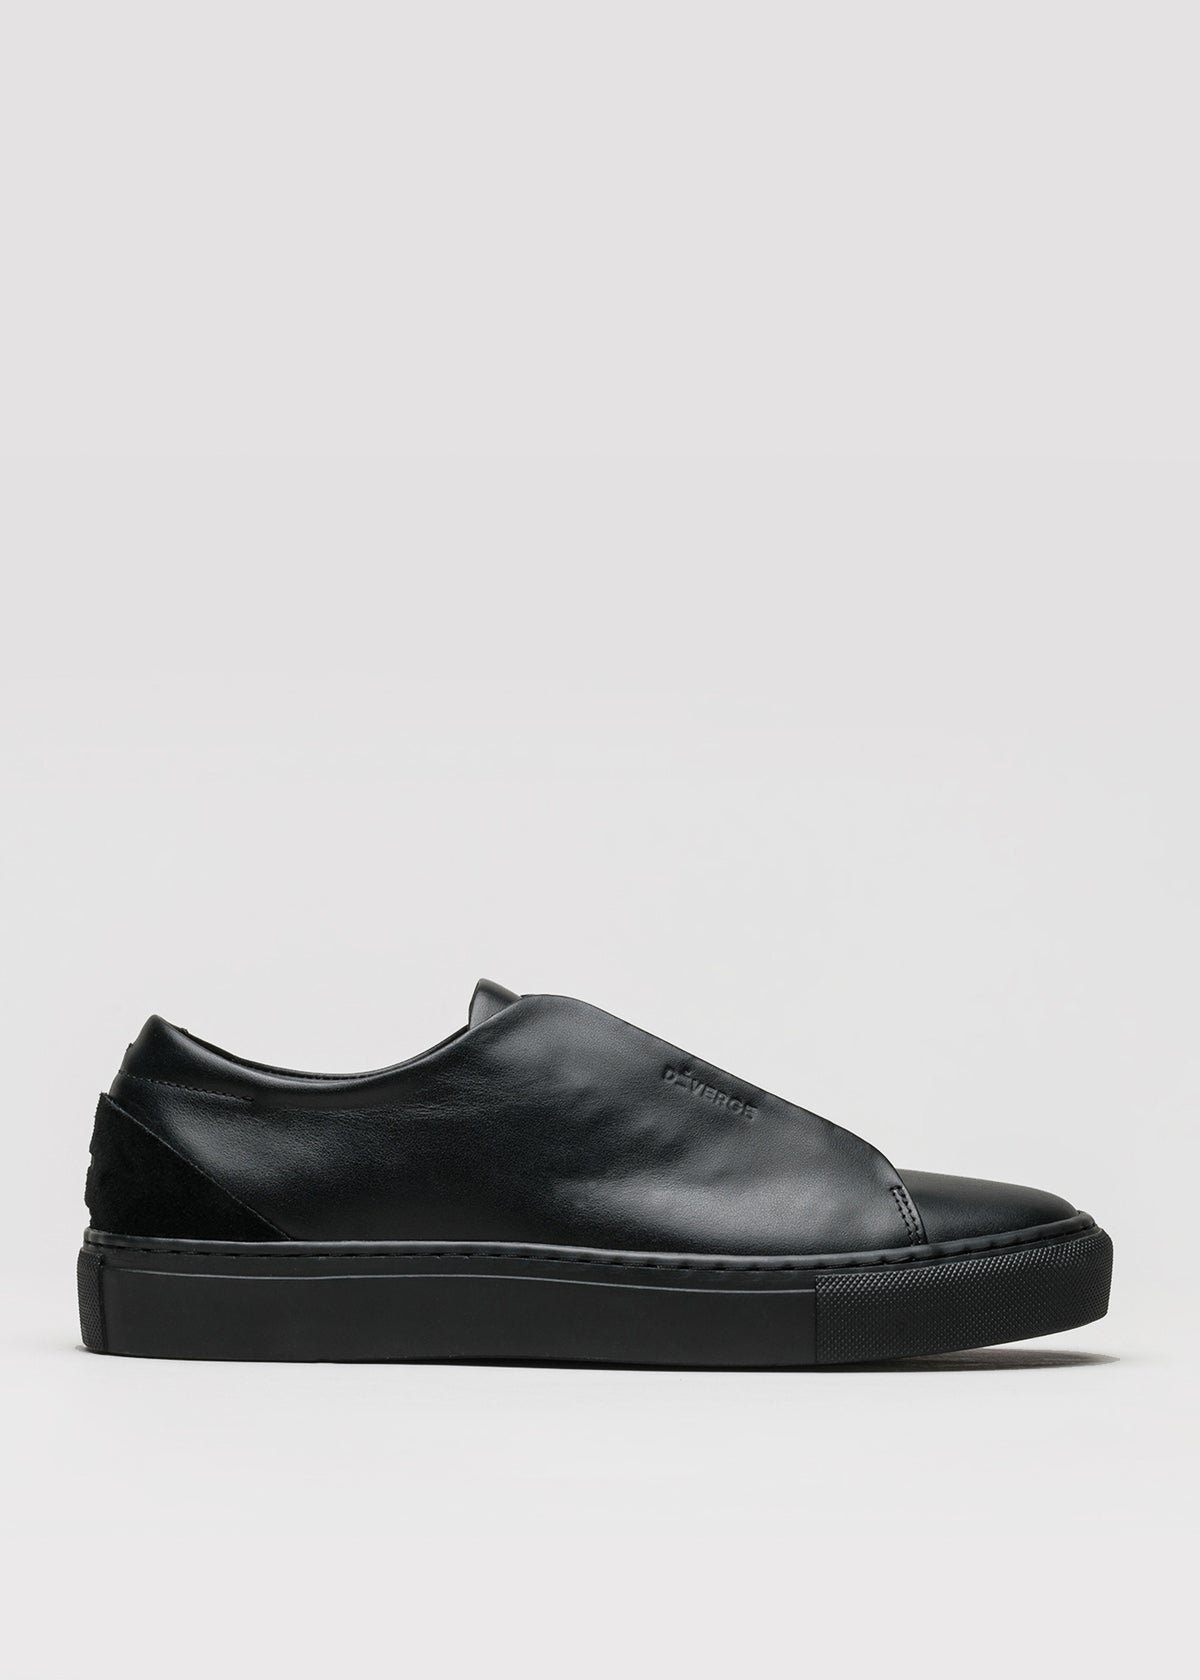 cuero negro premium bajo sneakers en diseño limpio sideview